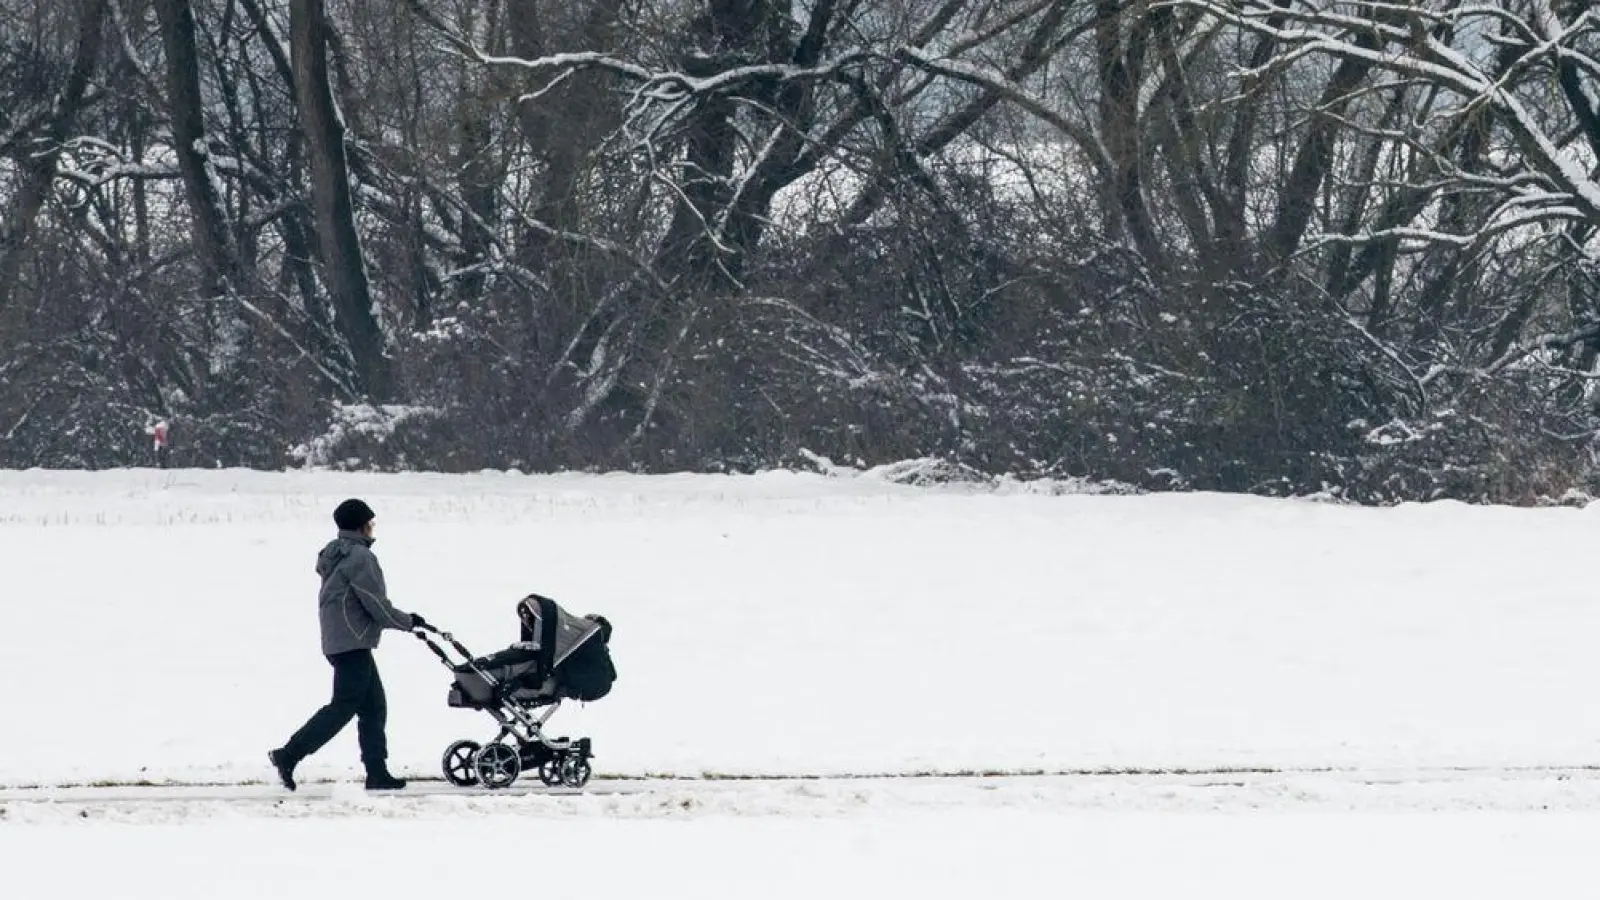 Babys verlieren schneller Wärme als Erwachsene. Beim Winterspaziergang sollten Eltern für die Kleinen einen Zwiebellook aus mehreren dünnen Lagen, die nicht zu eng am Körper anliegen, wählen. (Foto: Armin Weigel/dpa/dpa-tmn)